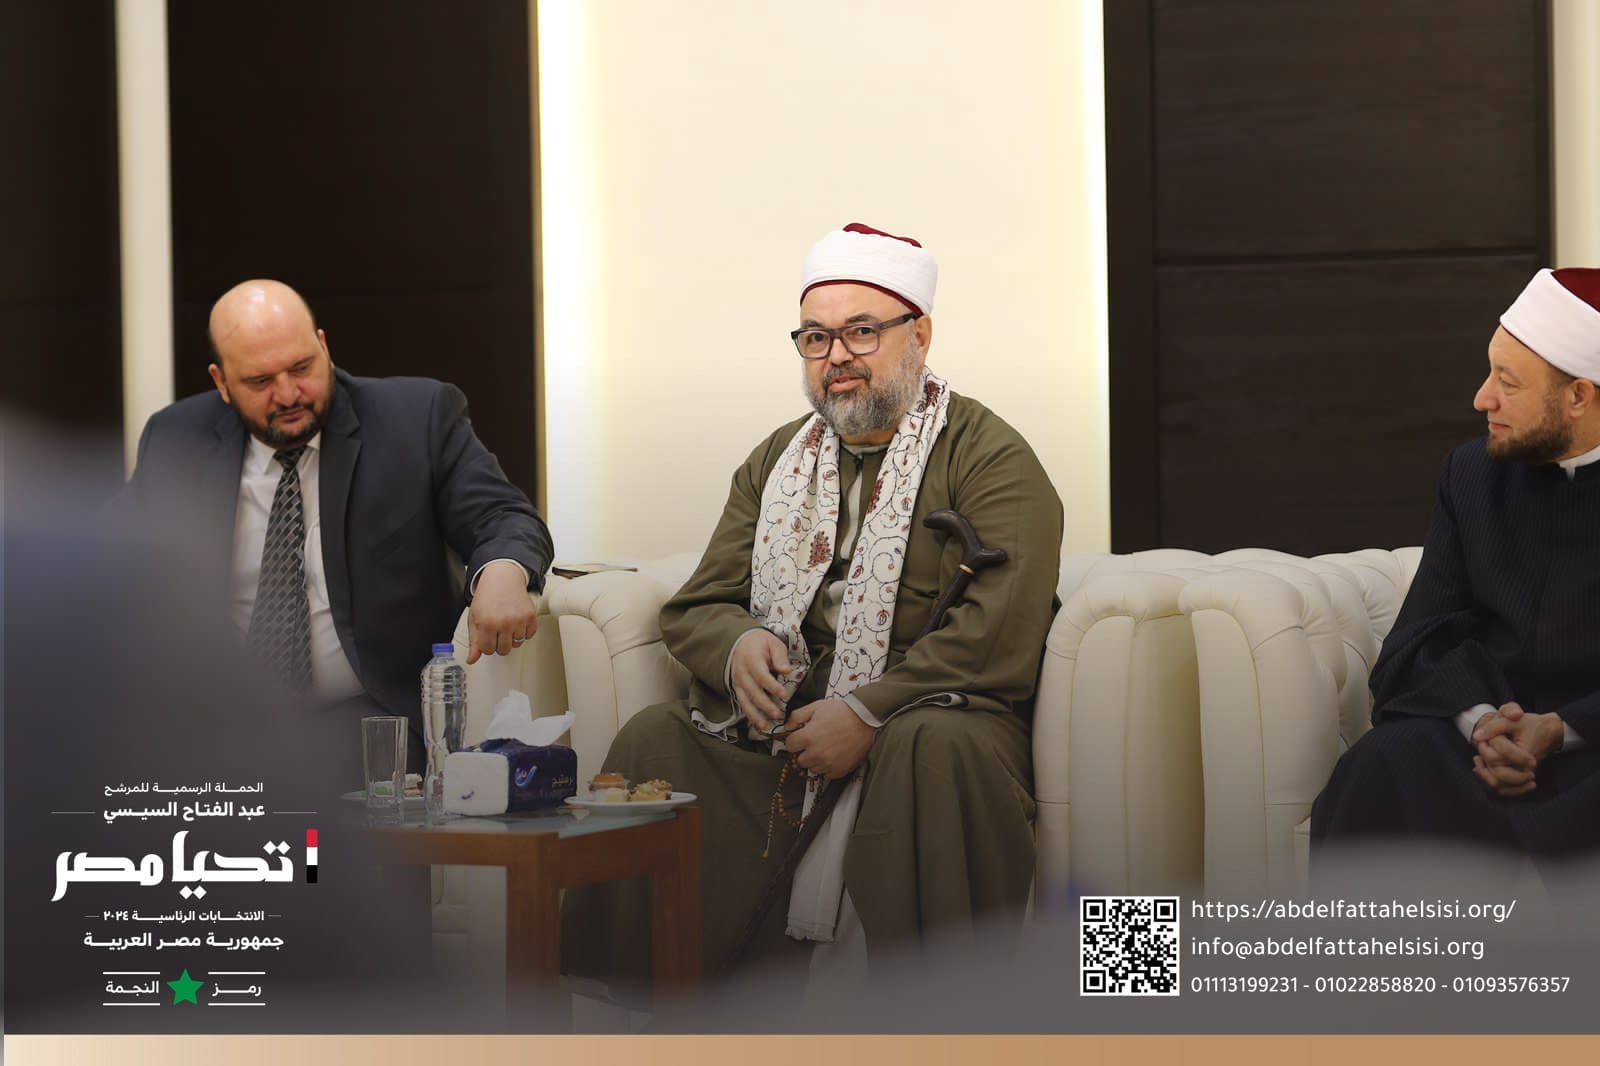 الحملة الرسمية للمرشح الرئاسي عبد الفتاح السيسي تلتقي المفتي الدكتور شوقي علام بدار الإفتاء (2)